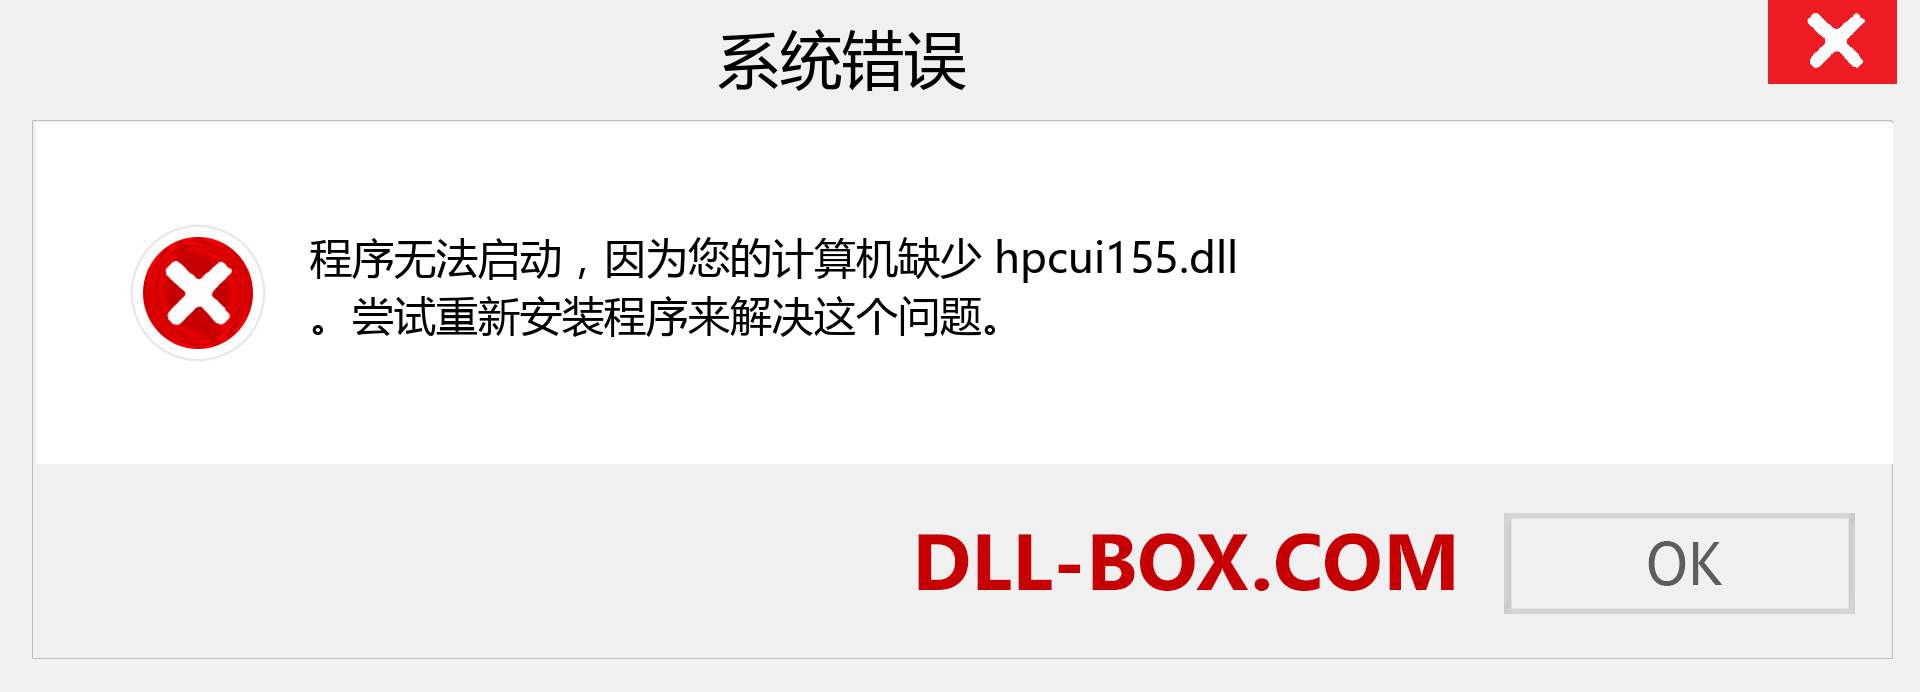 hpcui155.dll 文件丢失？。 适用于 Windows 7、8、10 的下载 - 修复 Windows、照片、图像上的 hpcui155 dll 丢失错误